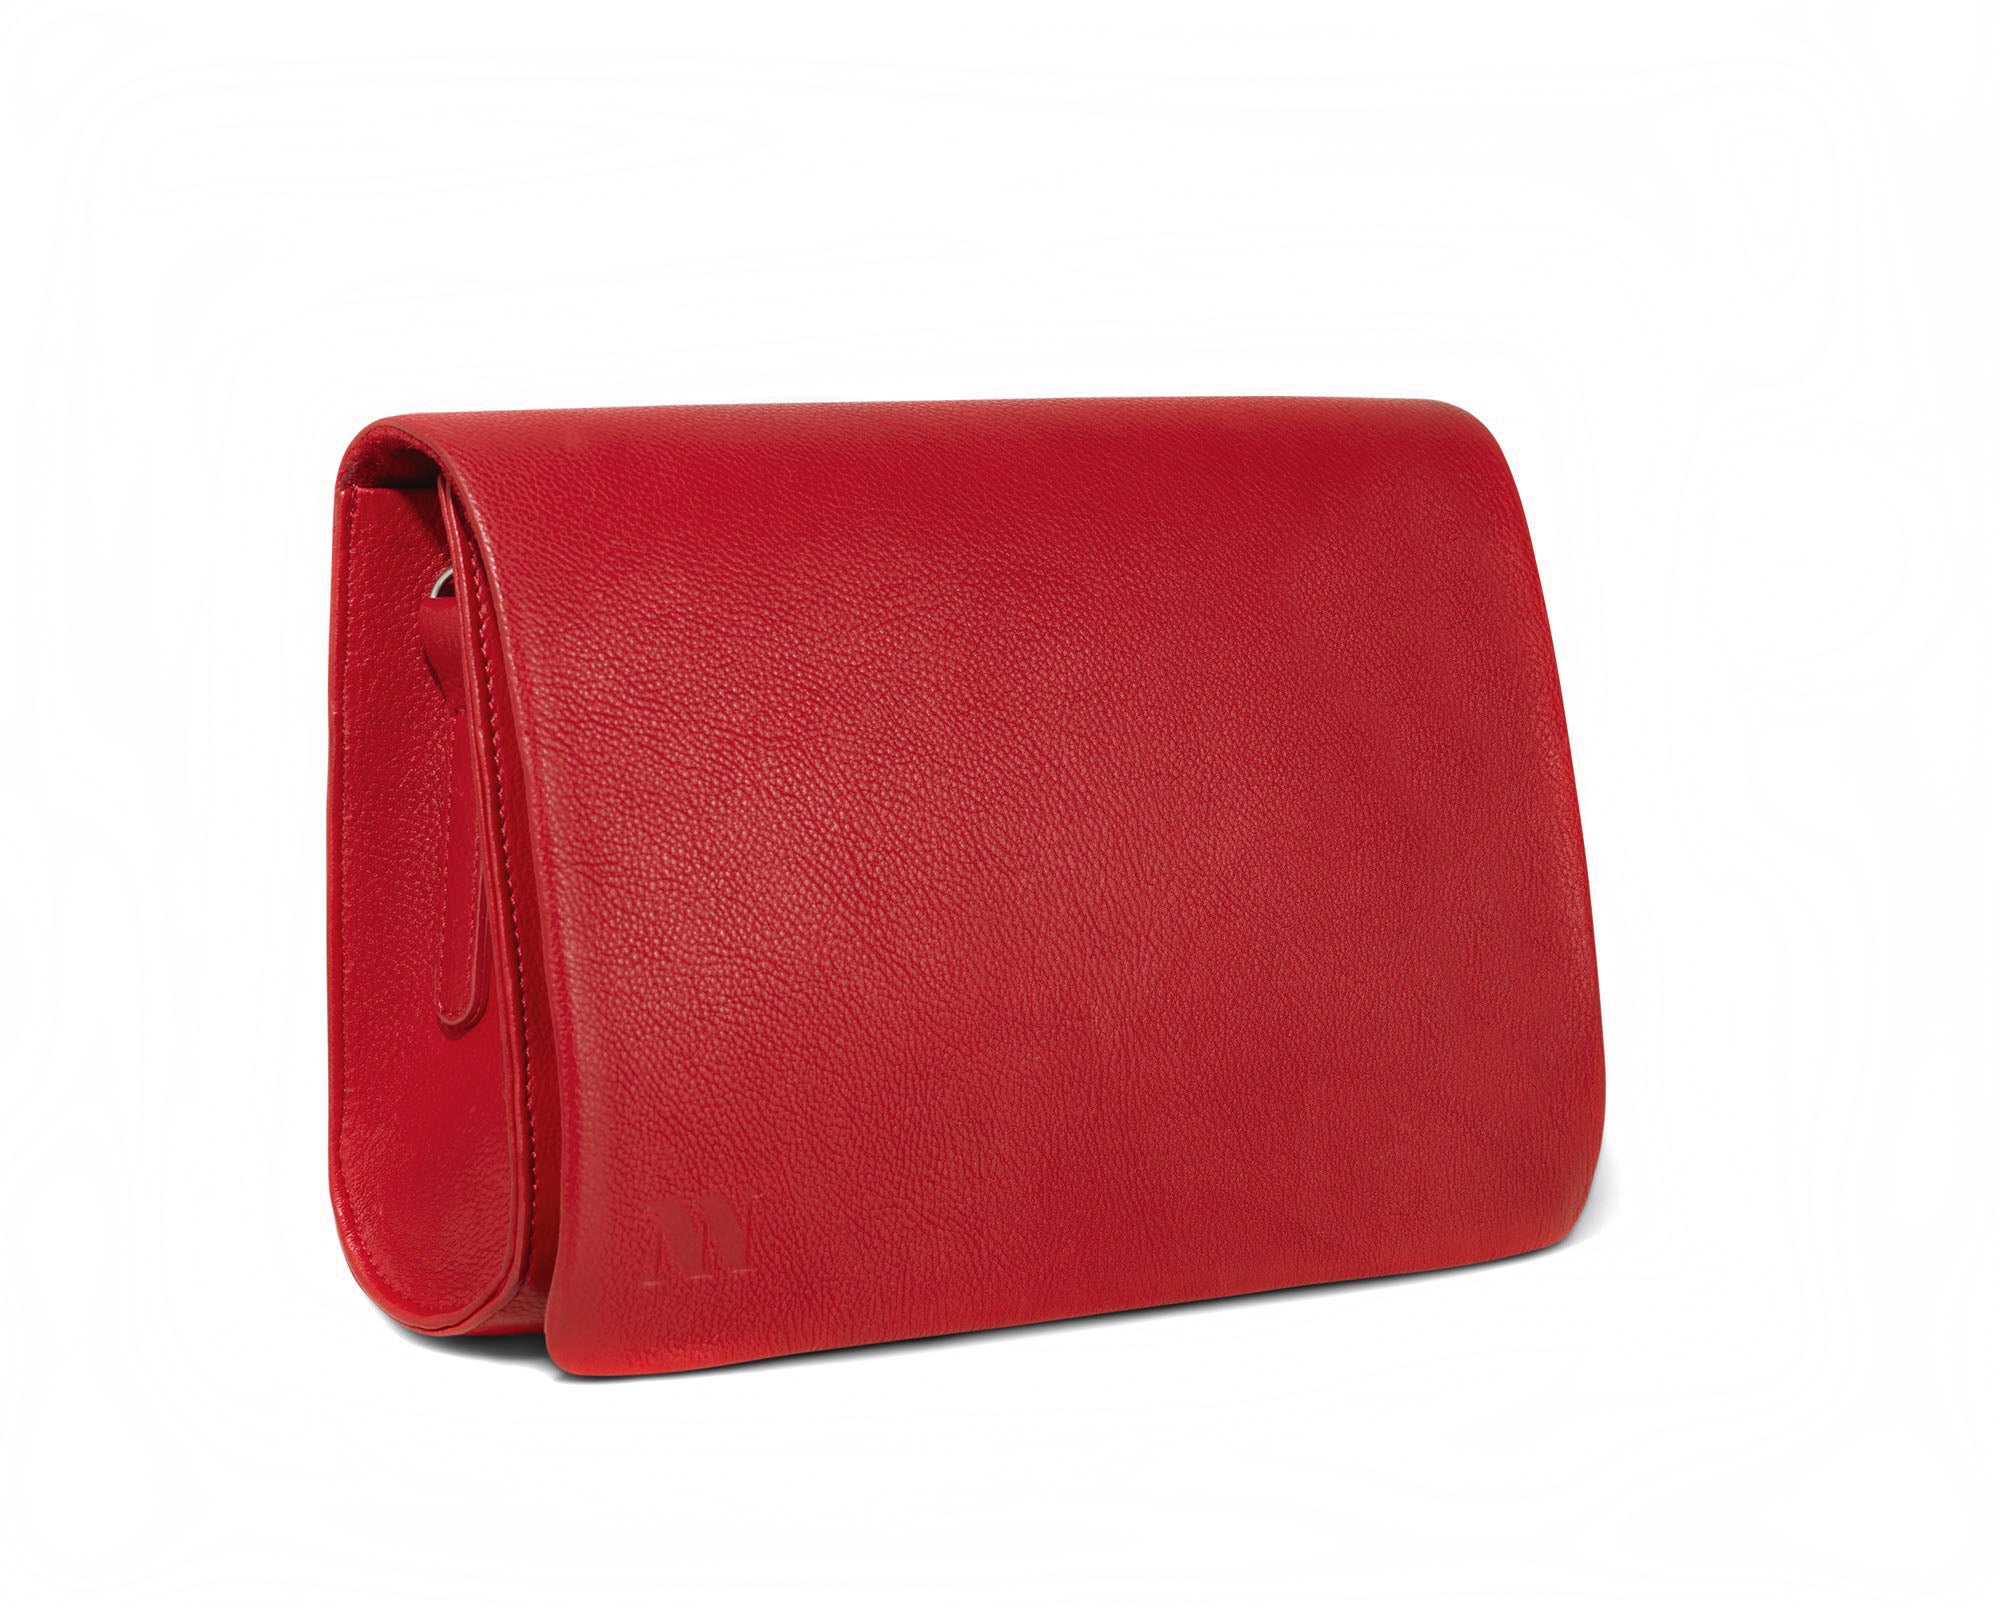 Infinite Handbag Scarlett Red – Natural Nuance